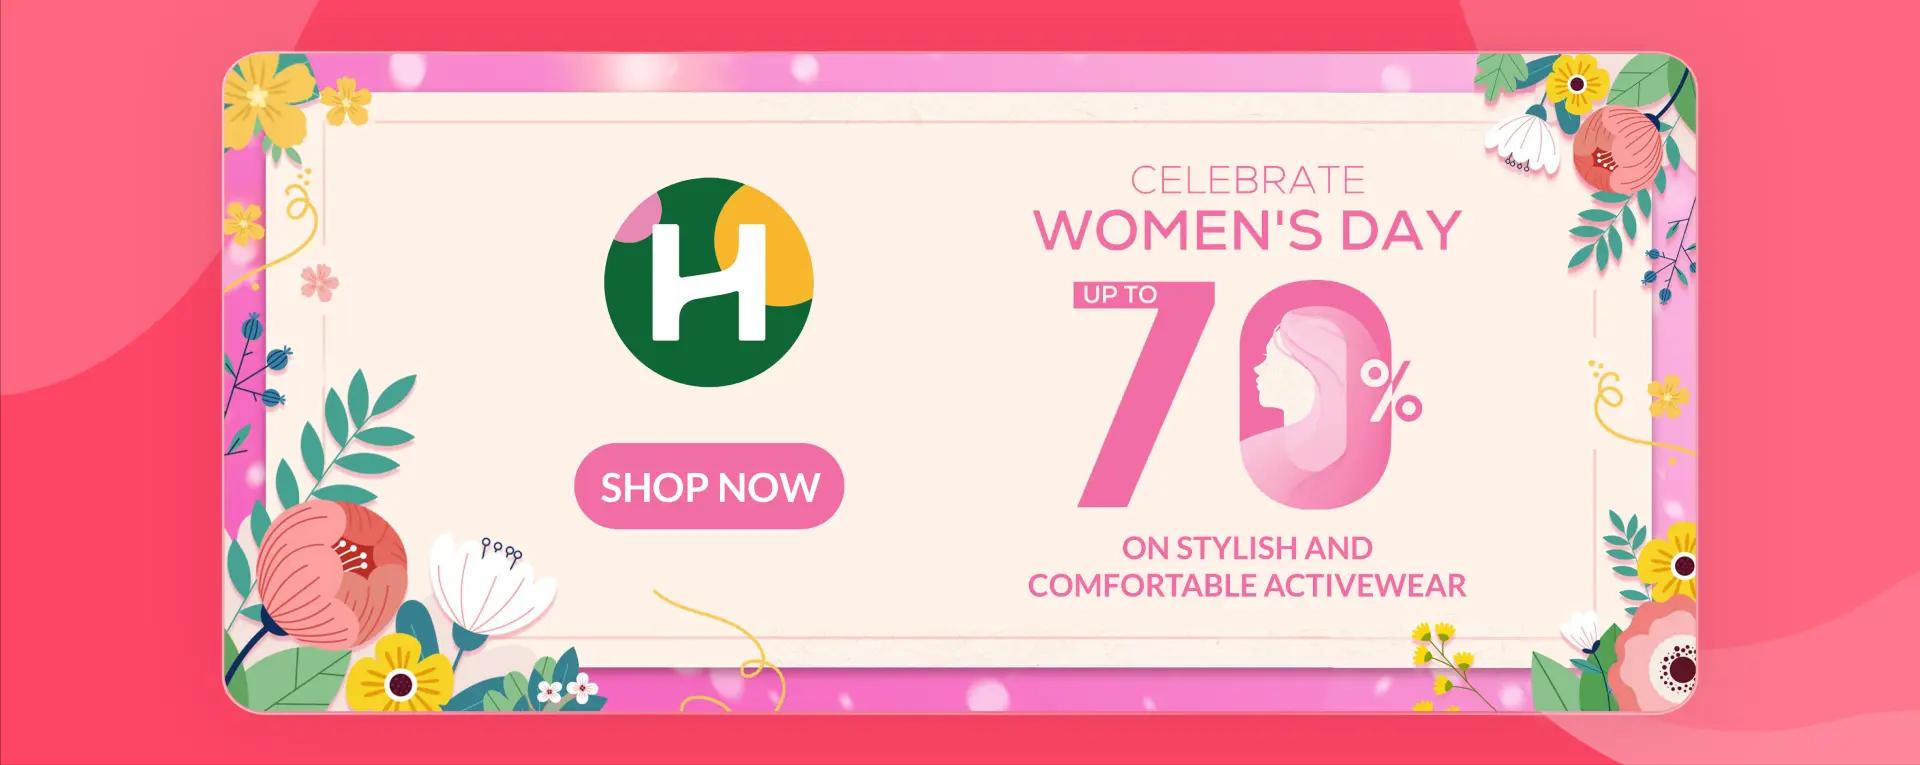 Halara women's day coupons 